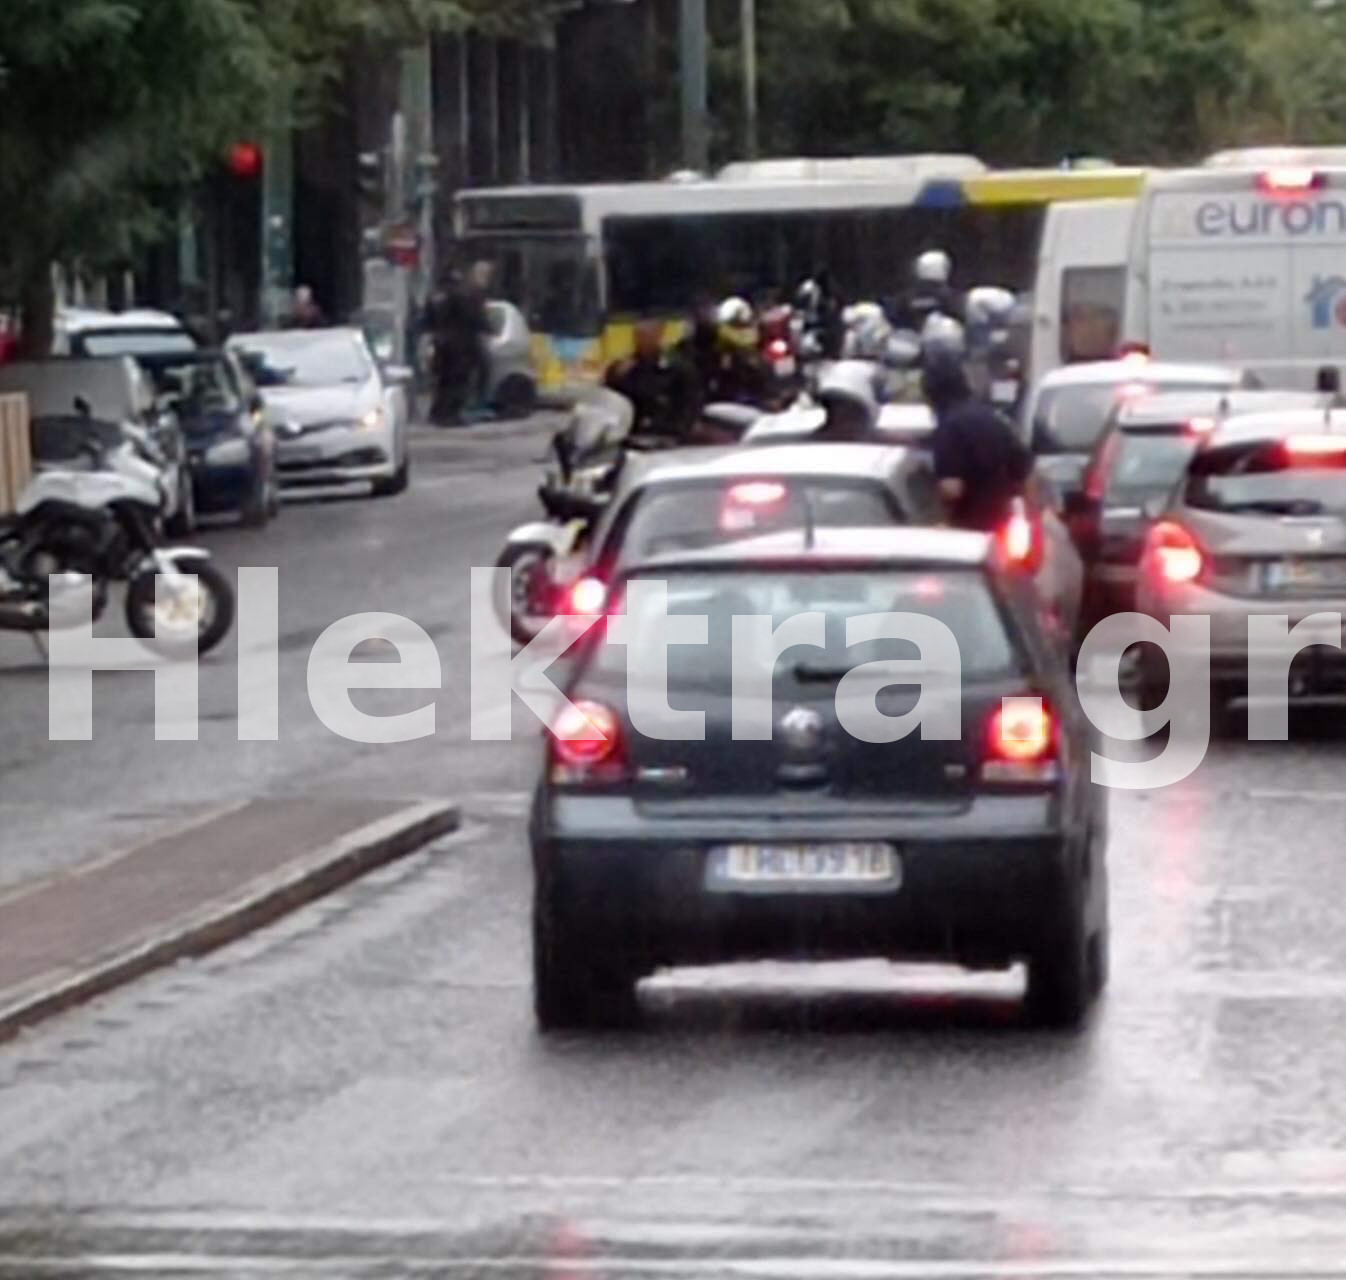 Πυροβολισμοί στο κέντρο της Αθήνας: Αυτοκίνητο εμβόλισε αστυνομικούς, ένας τραυματίας - ΕΛΛΑΔΑ